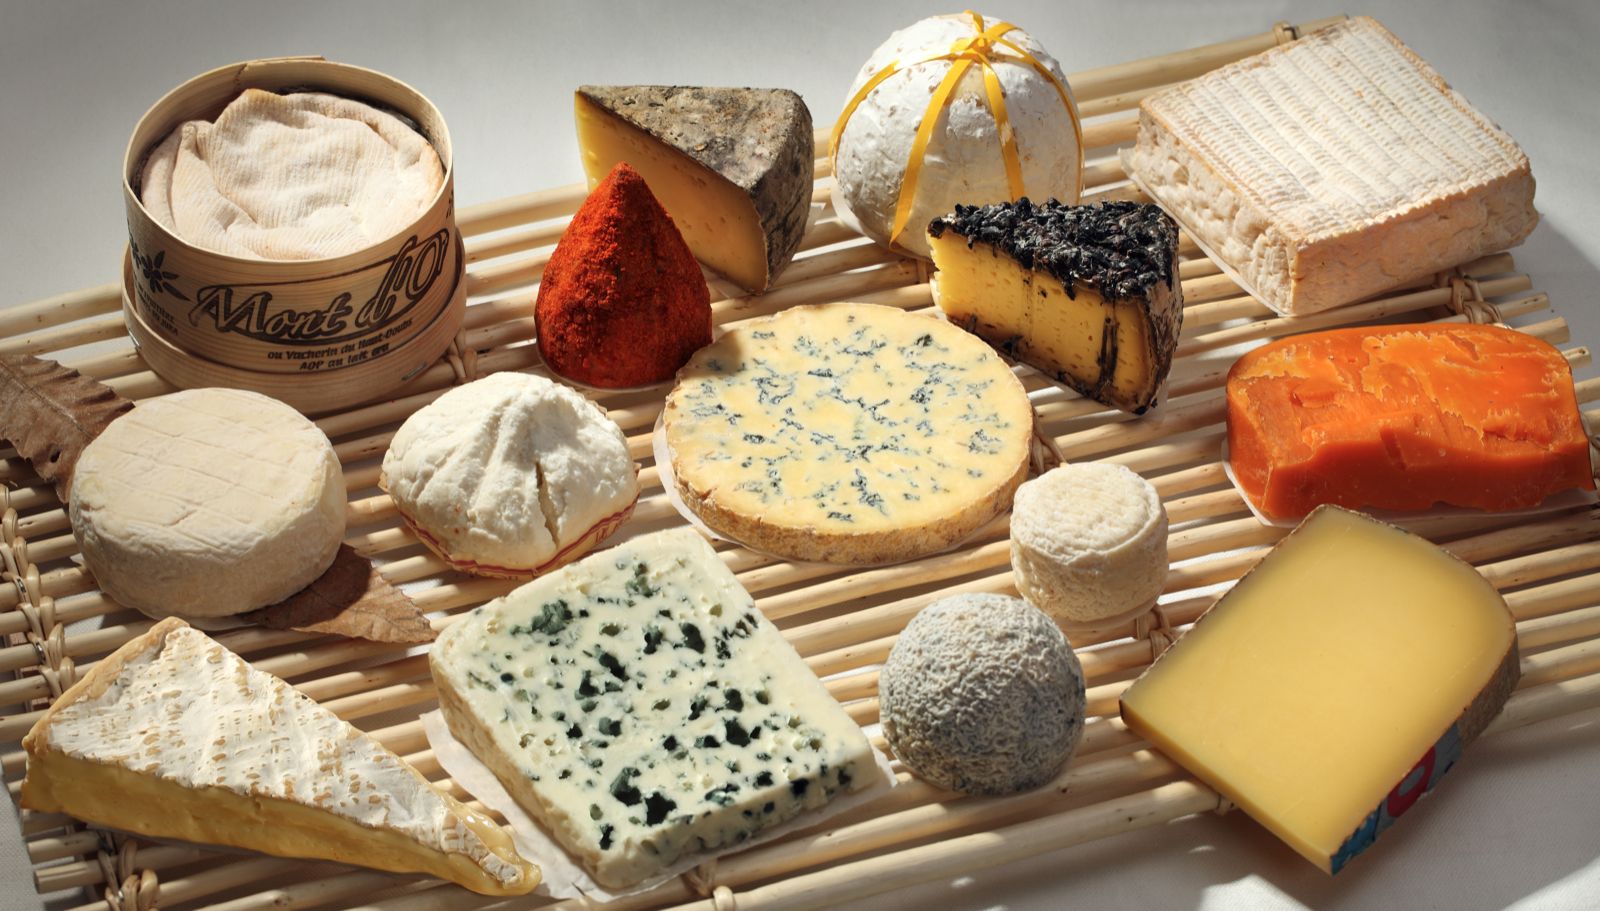 Job de rêve : Être payé pour manger du fromage tous les jours !